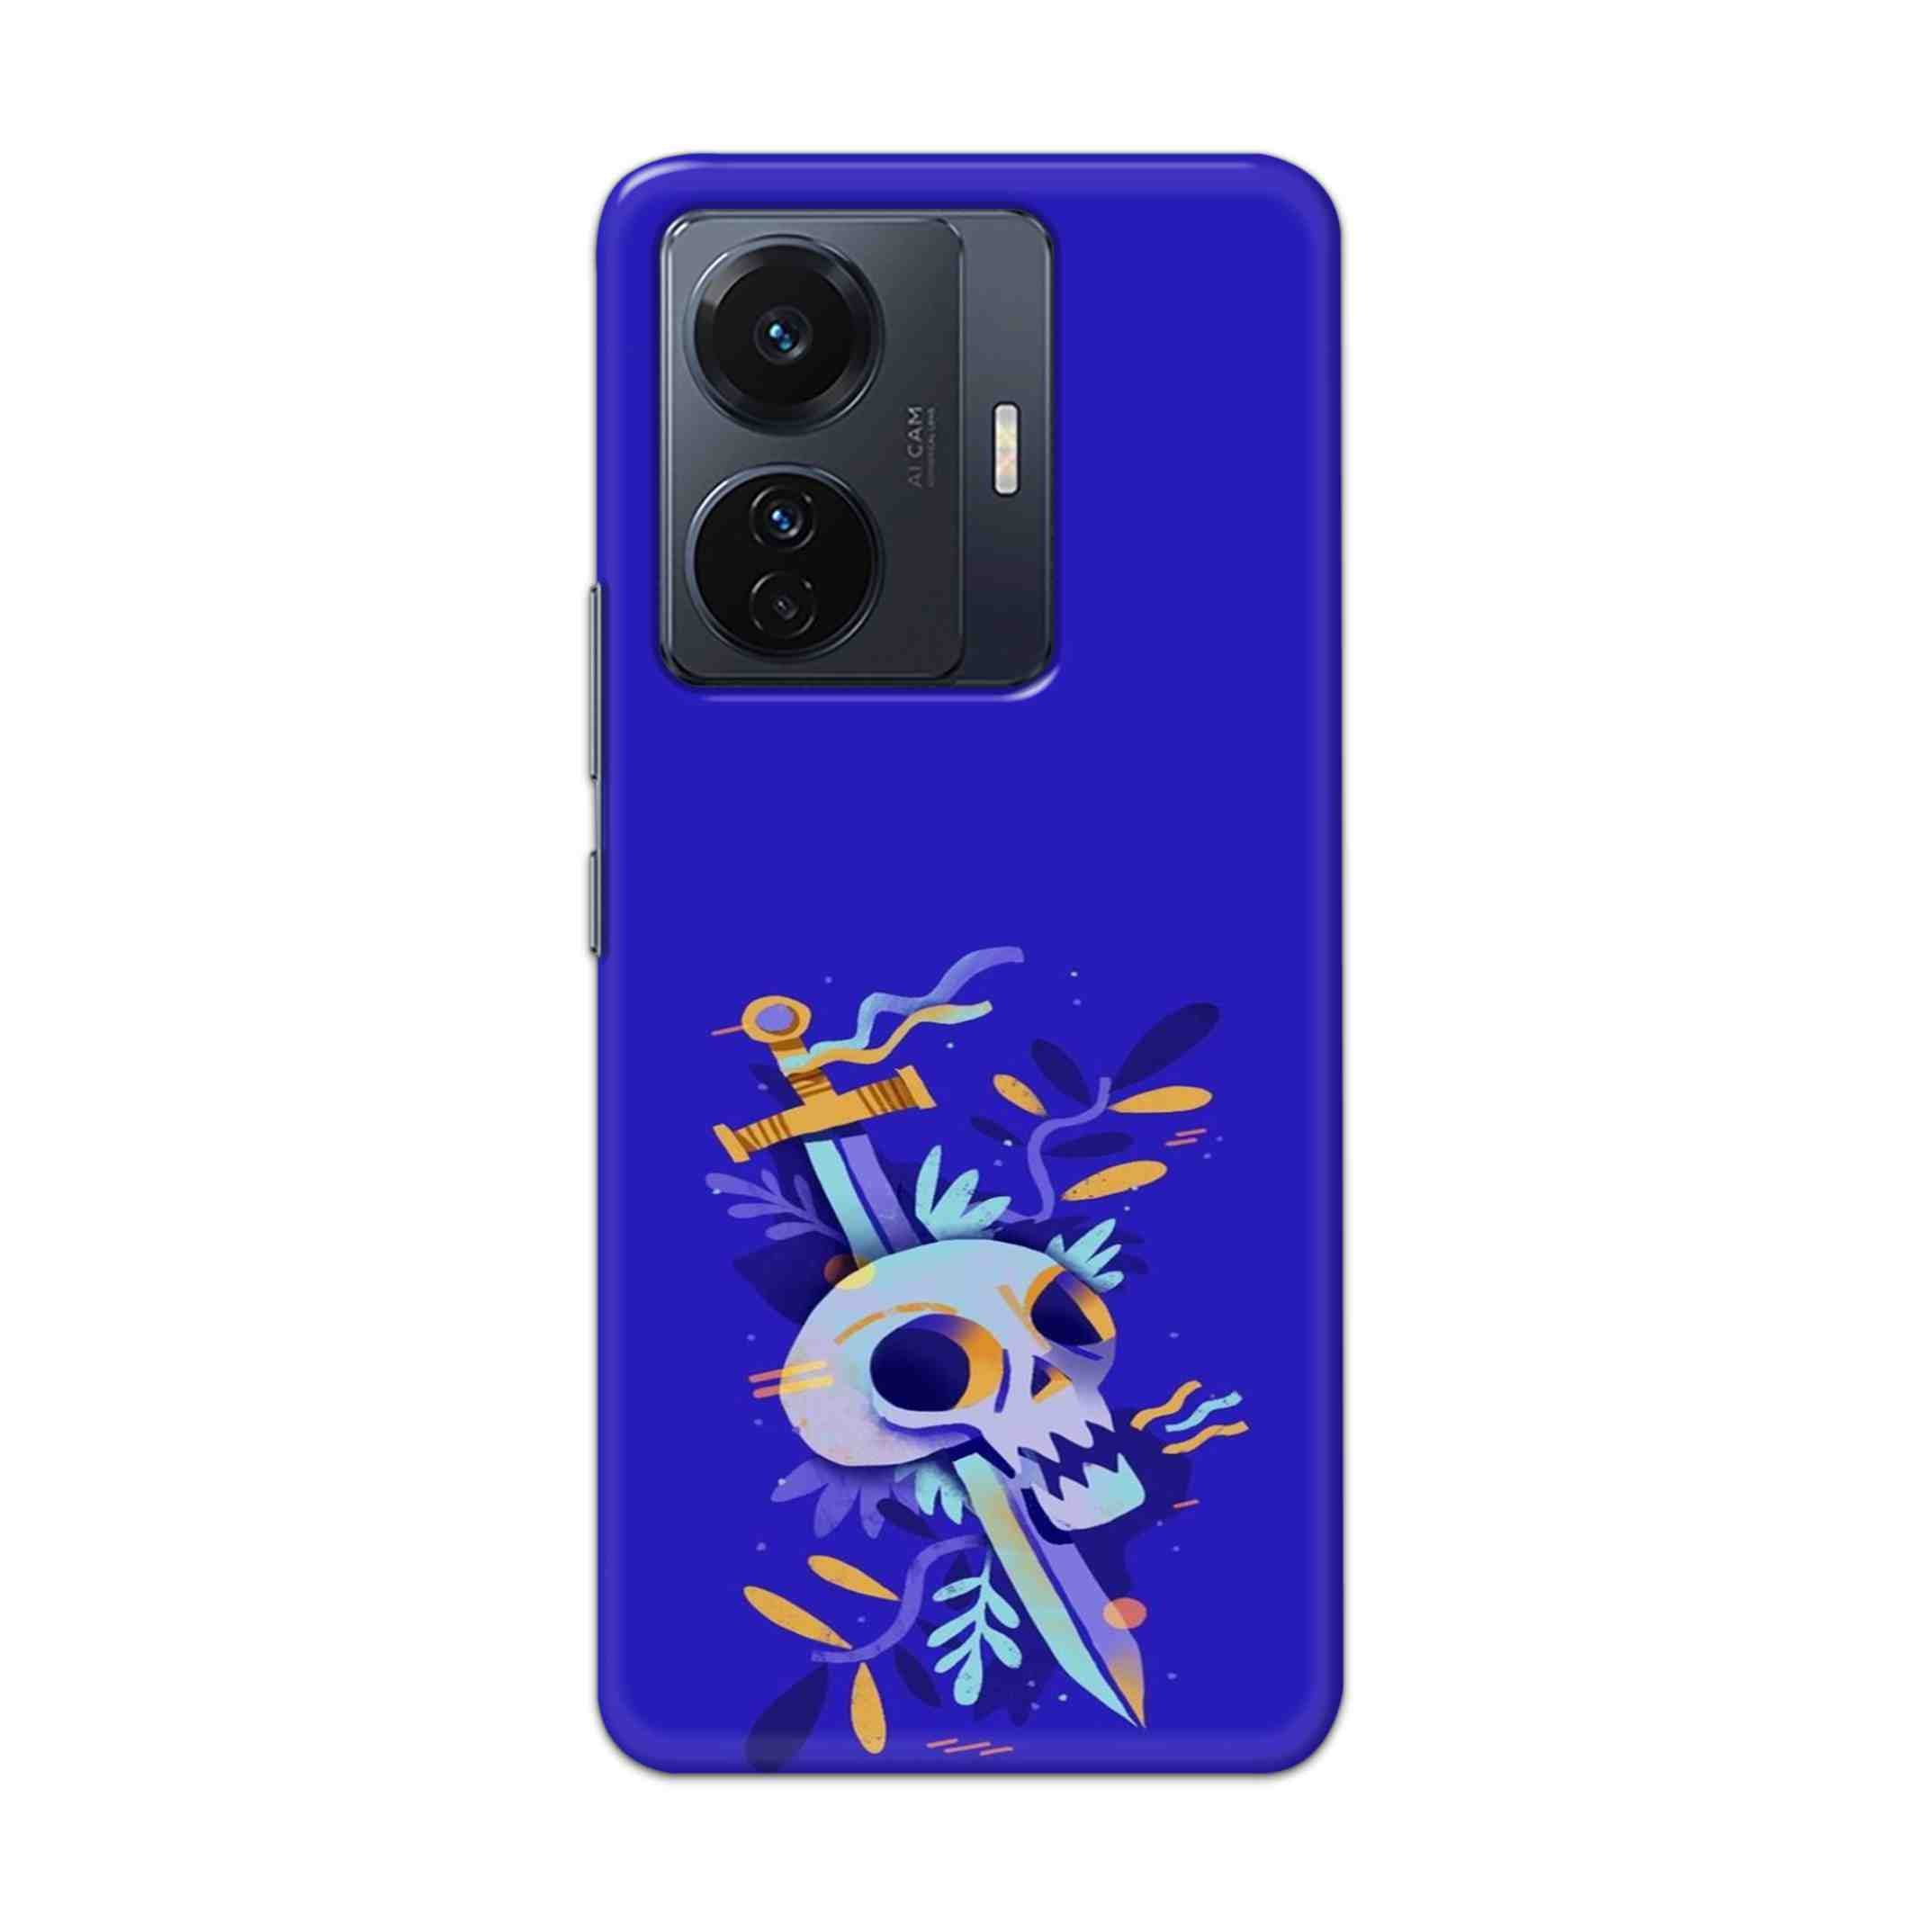 Buy Blue Skull Hard Back Mobile Phone Case Cover For Vivo T1 Pro 5G Online